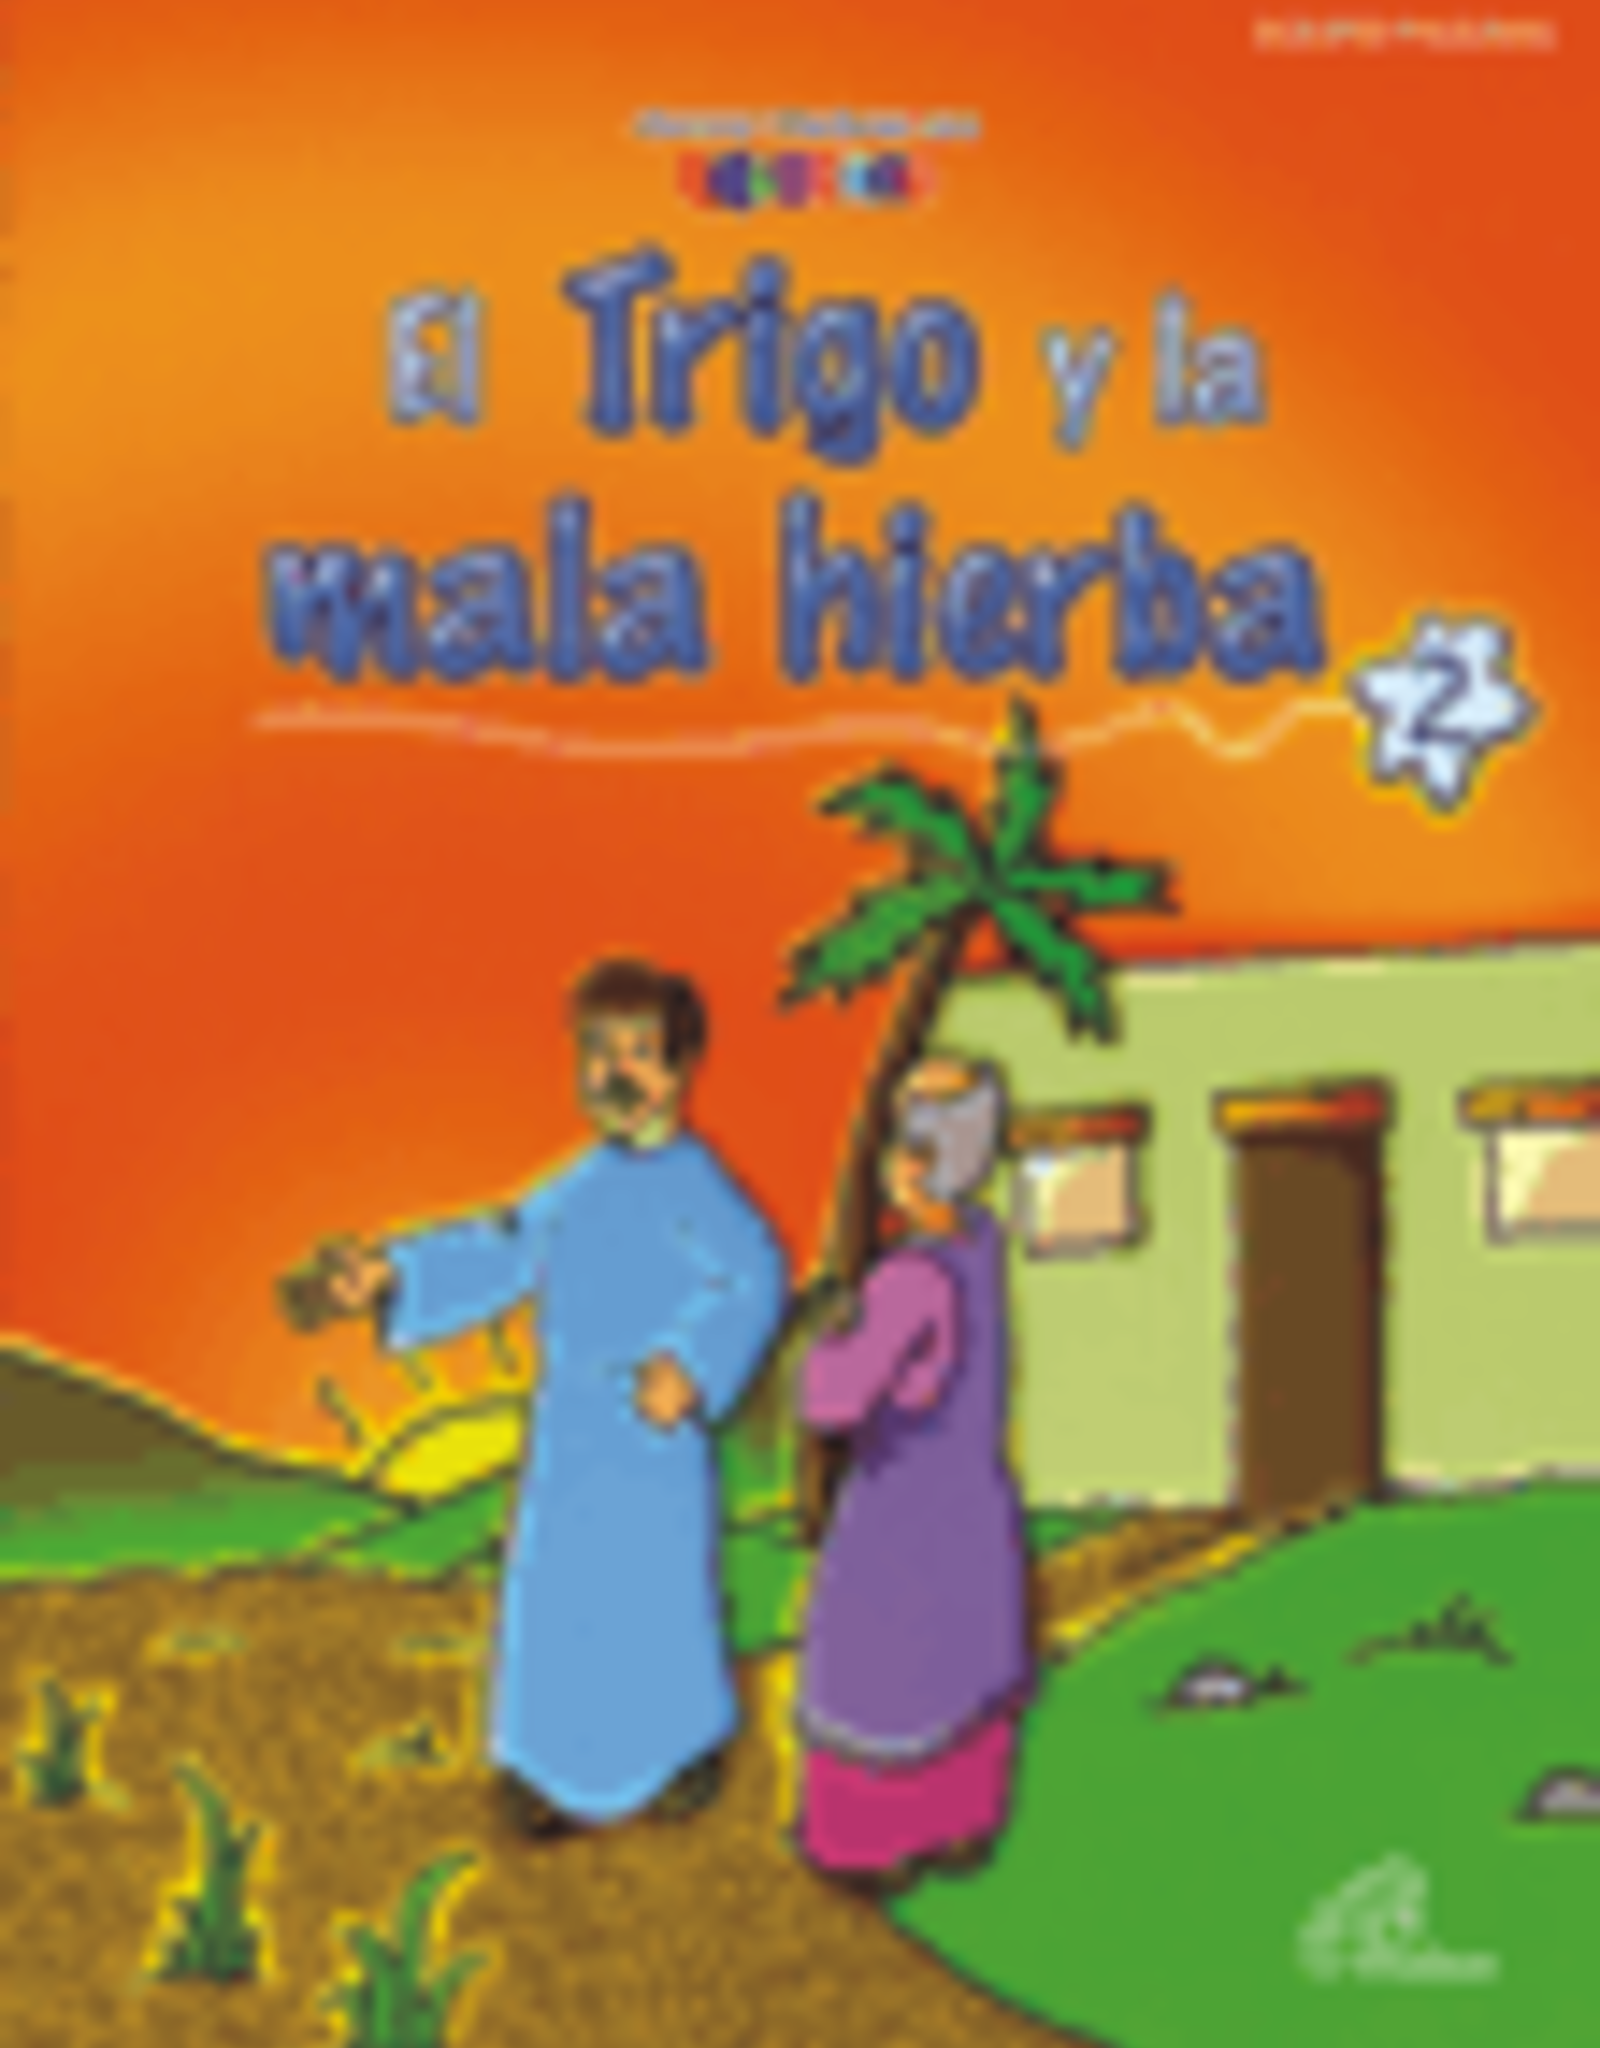 Paulinas El Trigo y la Mala Hierba Bilingual